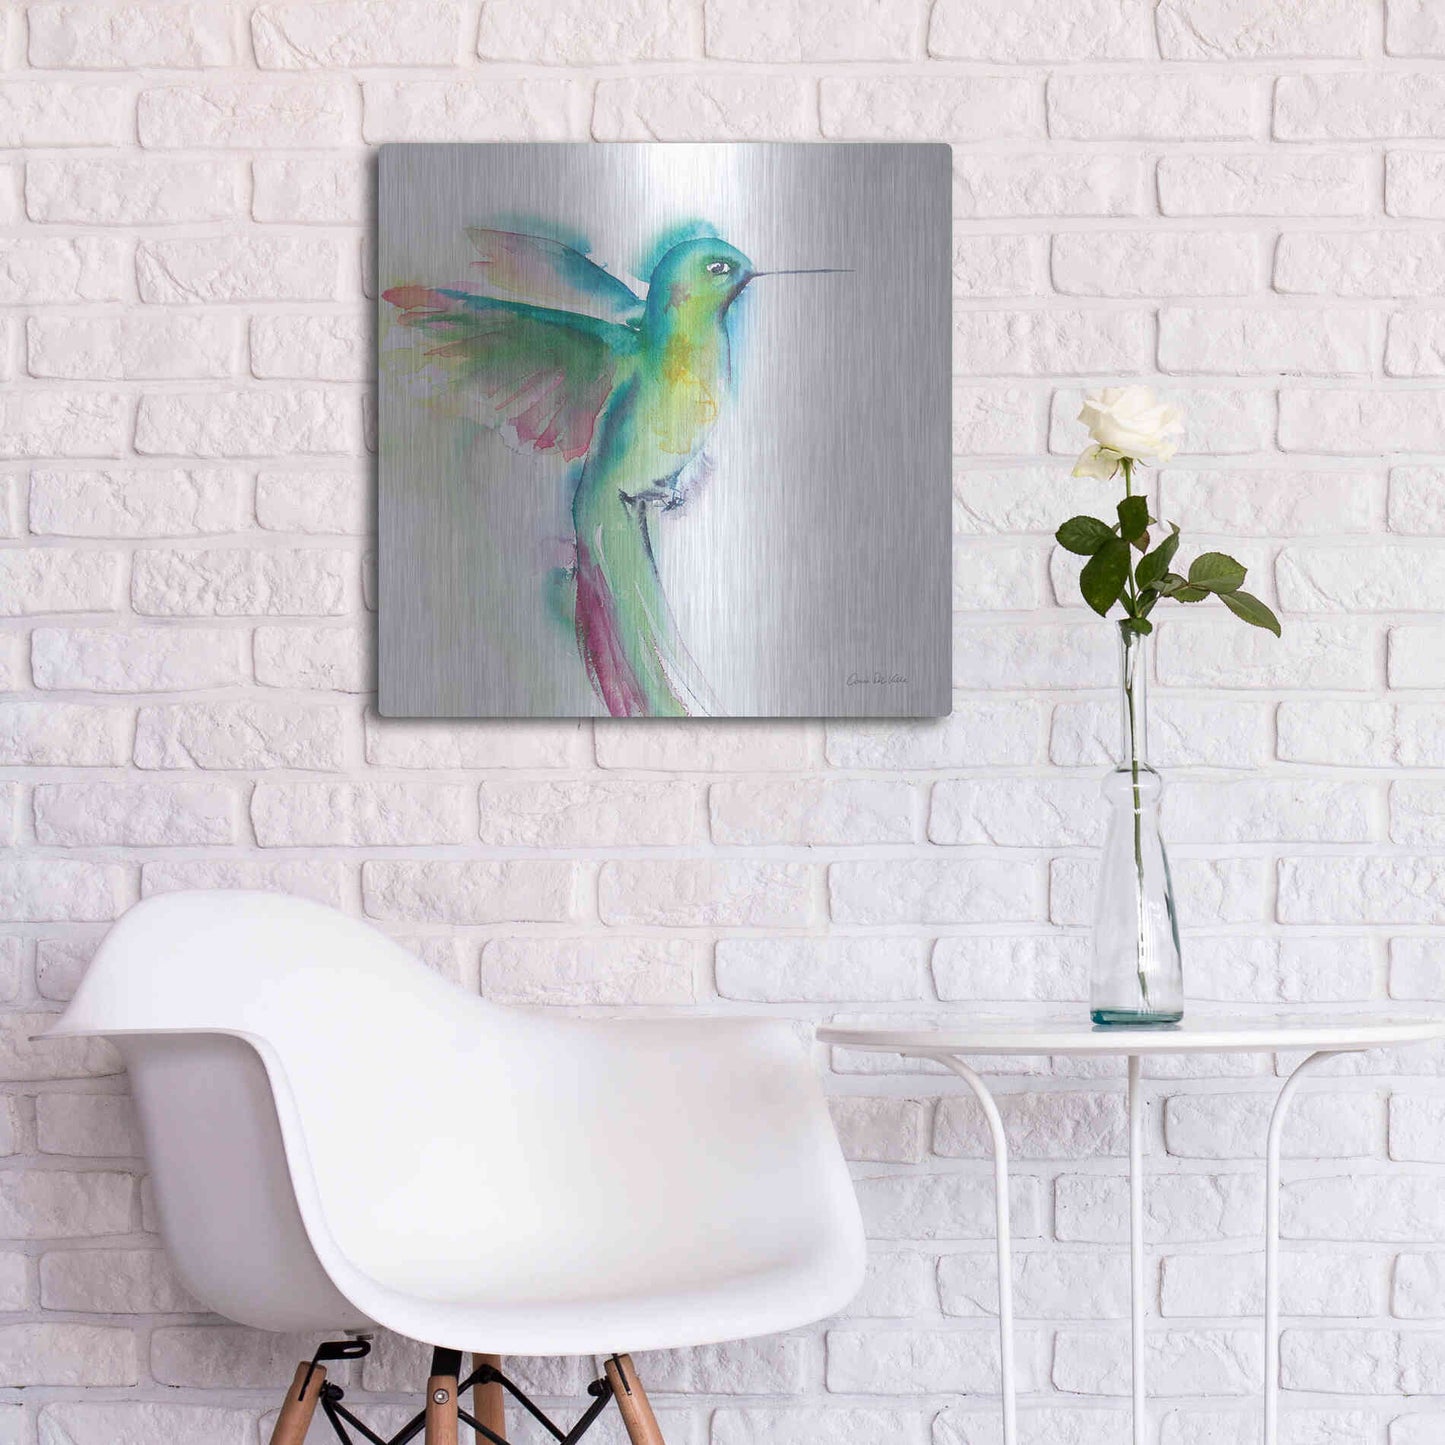 Luxe Metal Art 'Hummingbirds II' by Alan Majchrowicz, Metal Wall Art,24x24